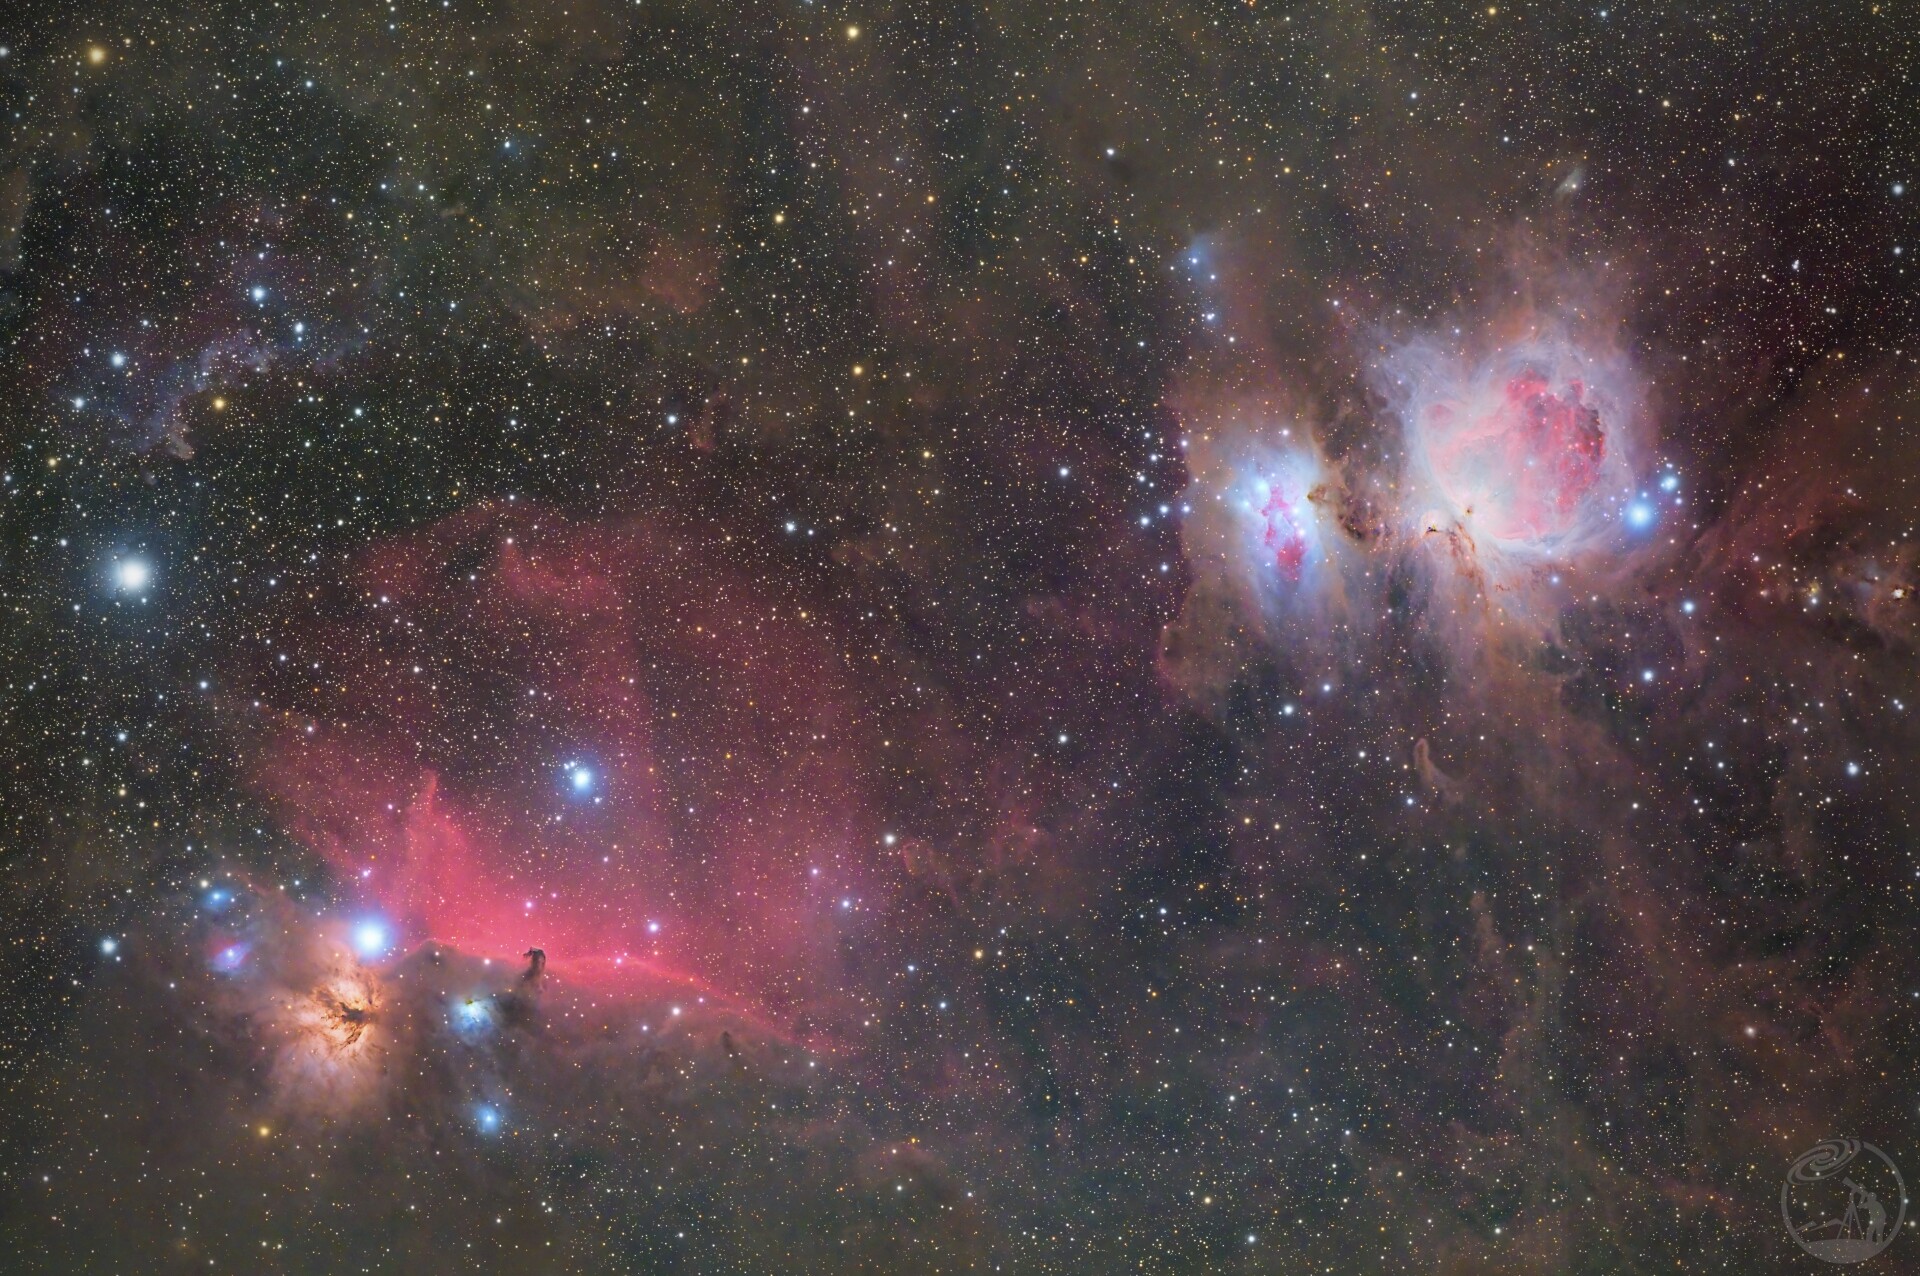 猎户座星云M42与马头星云IC434广域